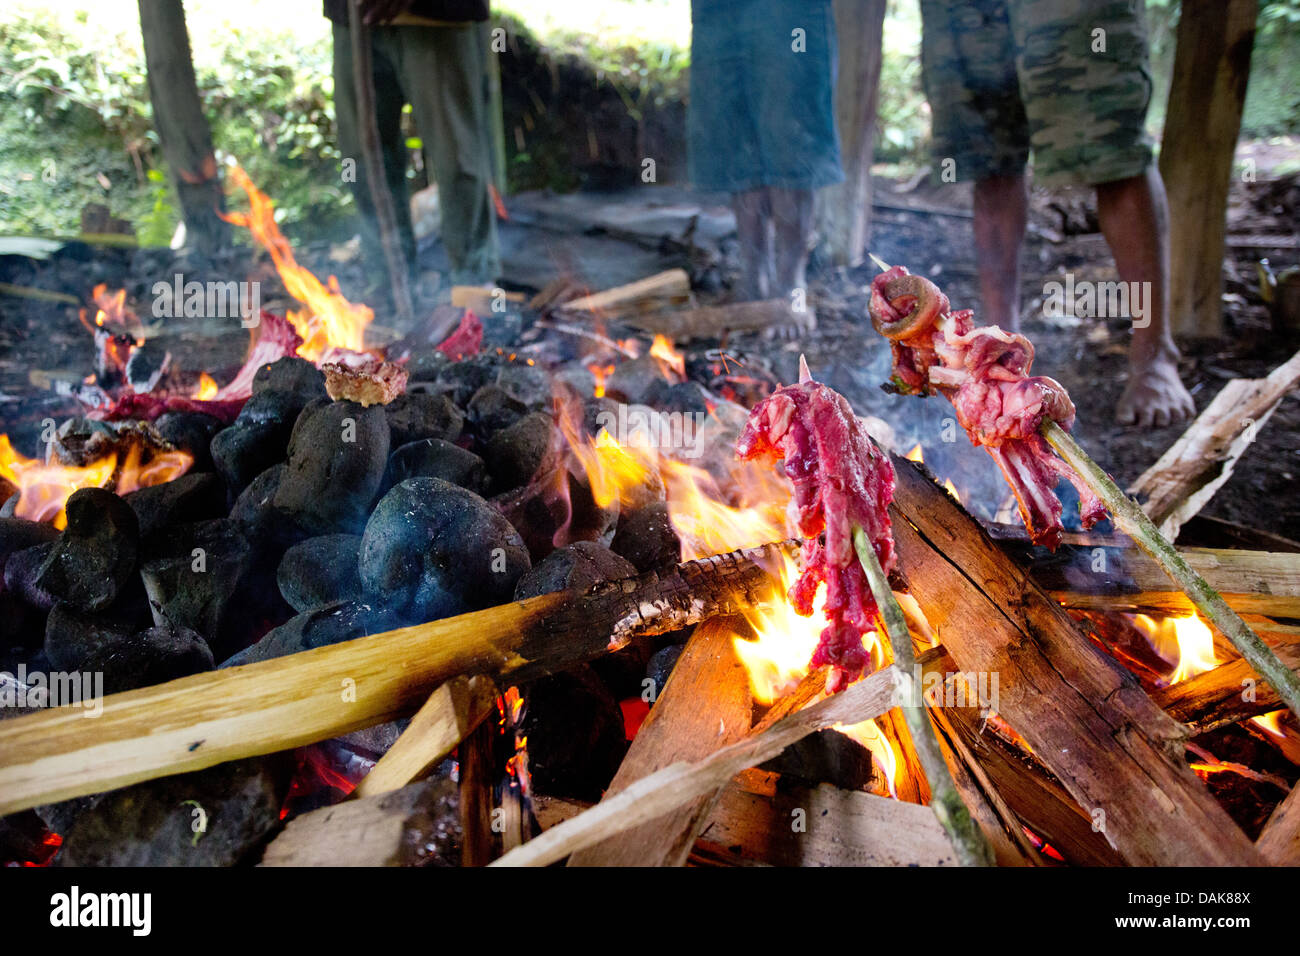 Schweinefleisch kochen über eine traditionelle Papua Neuguinea Erde Backofen oder "Mumu", Provinz Enga, Papua New Guinea Stockfoto